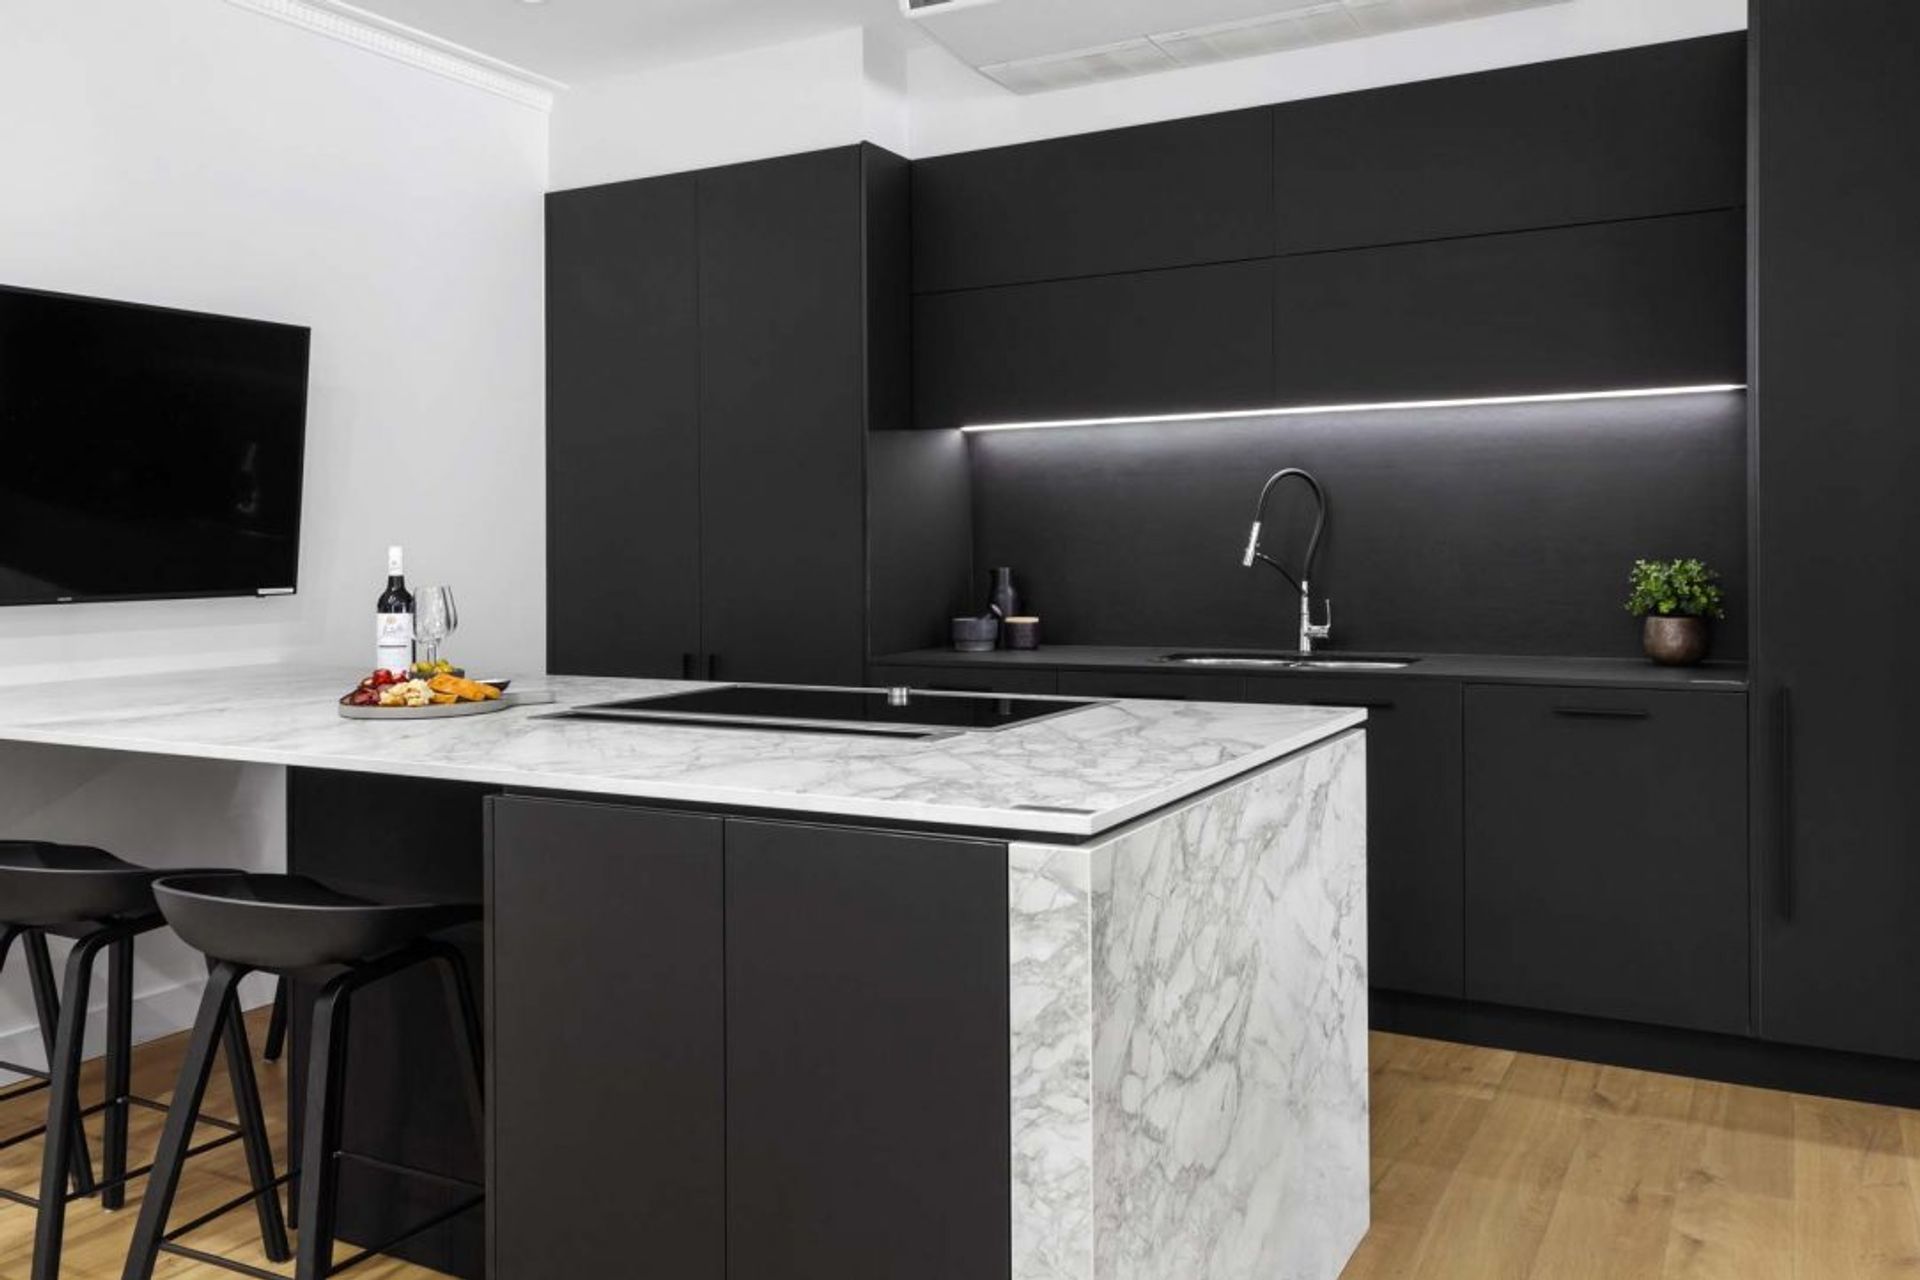 modern-kitchen-design-sydney-kitchen-showroom-dekton-portum-benchtop-black-cabinets-6-1084x723.jpg